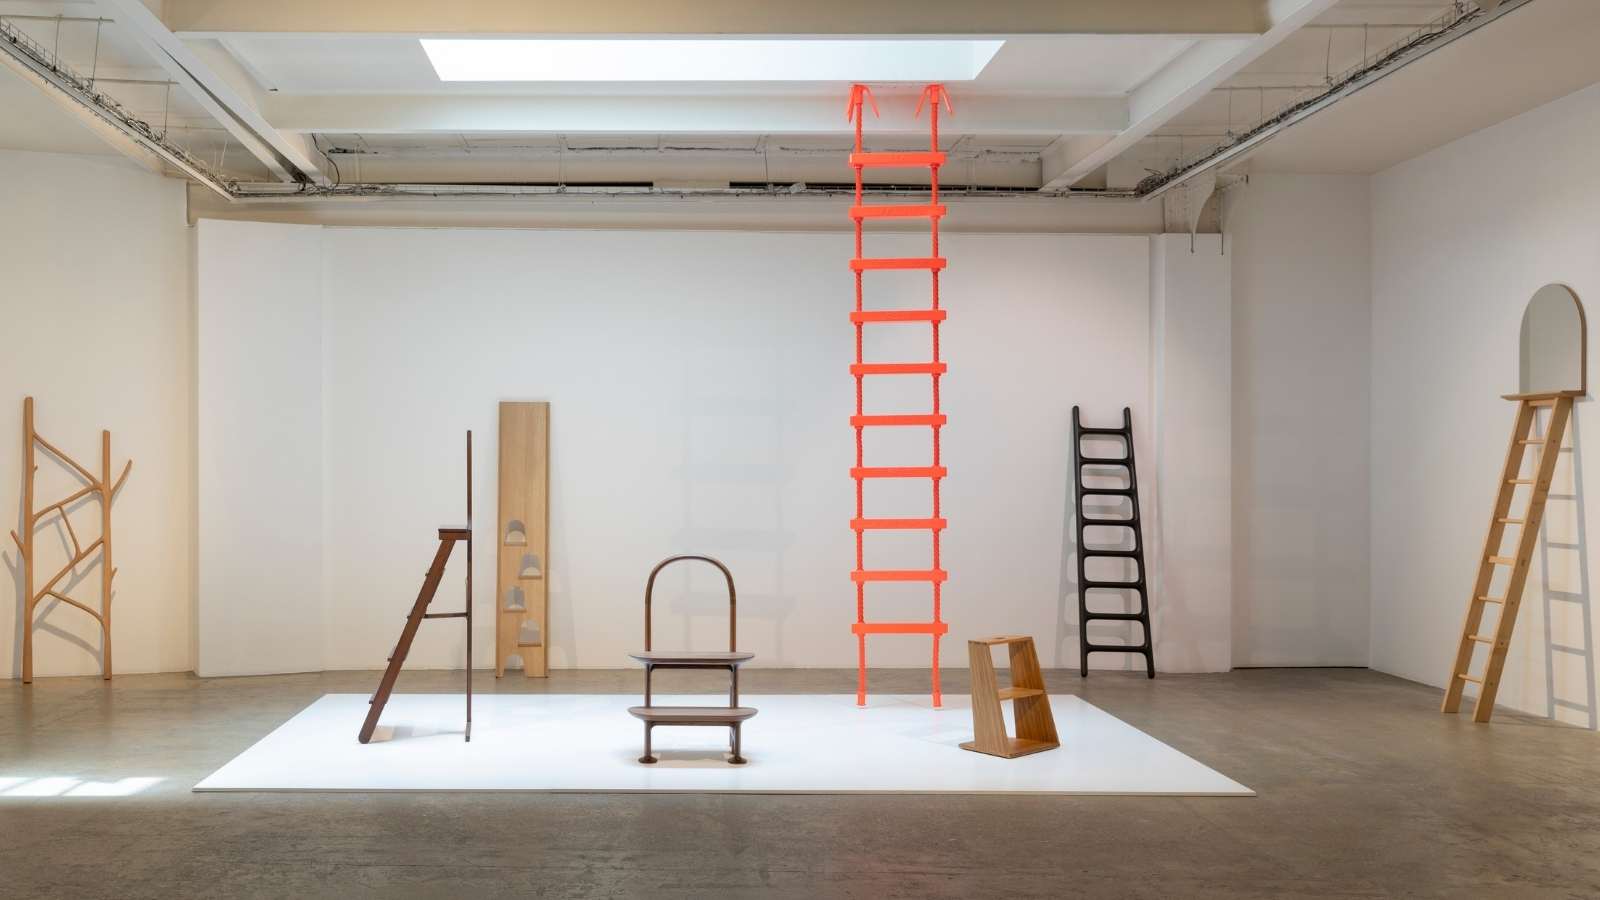 La Galerie Kreo de Londres convierte la escalera en nueva joya del mobiliario